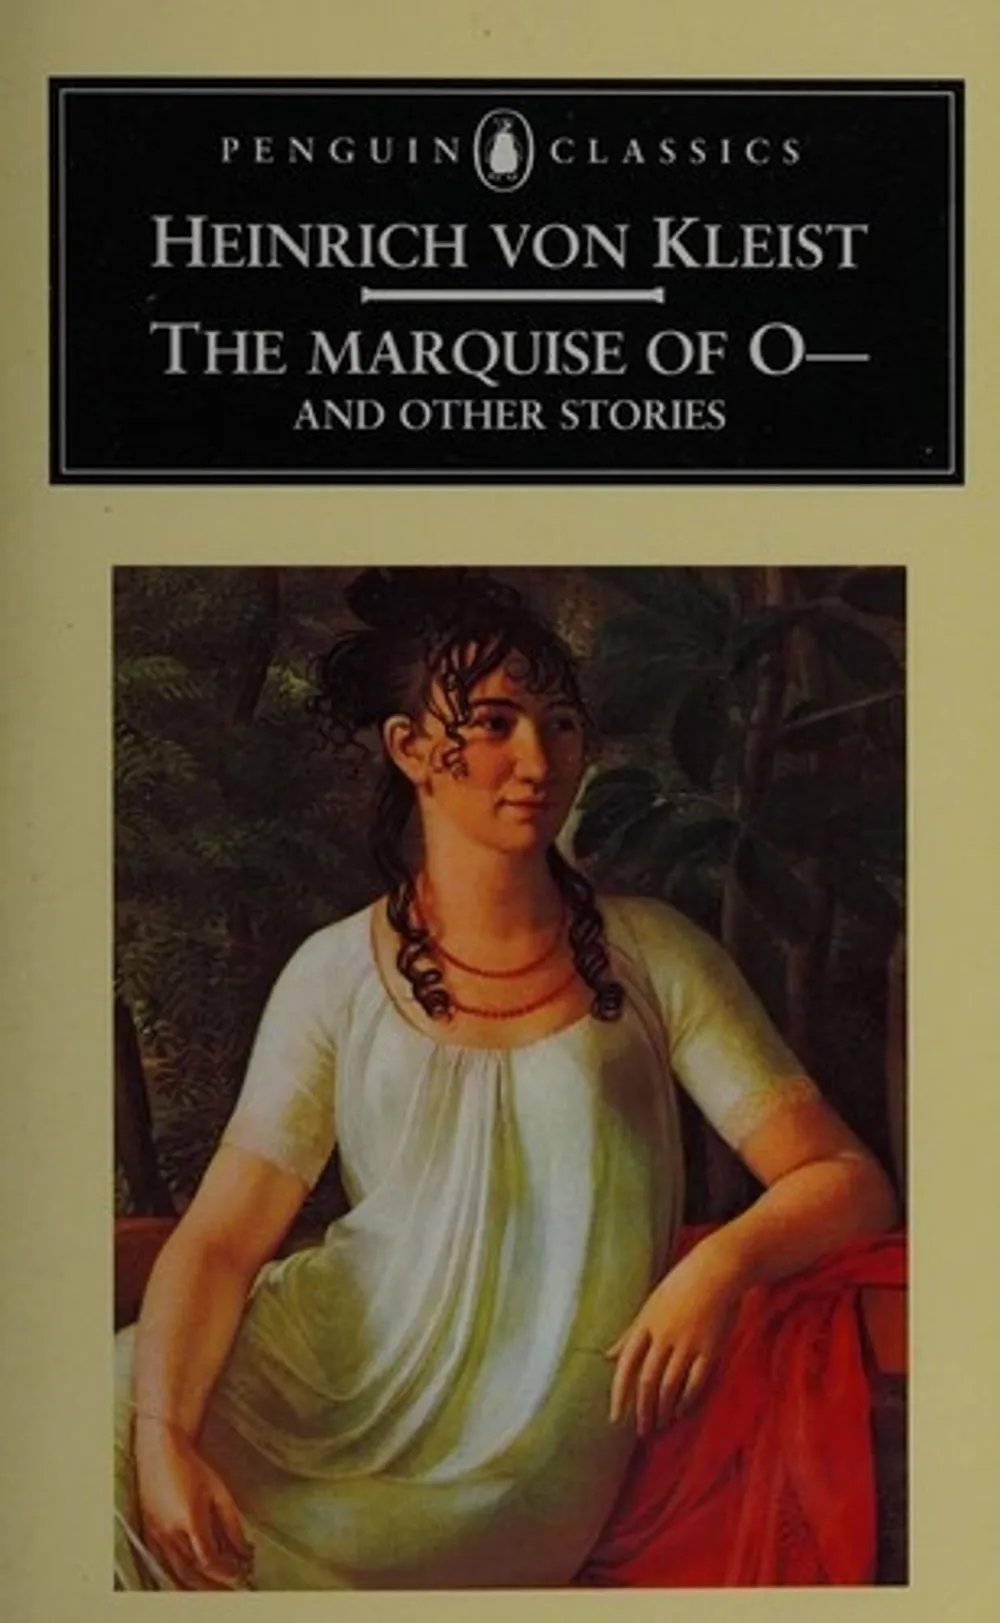 The Marquise of O—, by Heinrich von Kleist